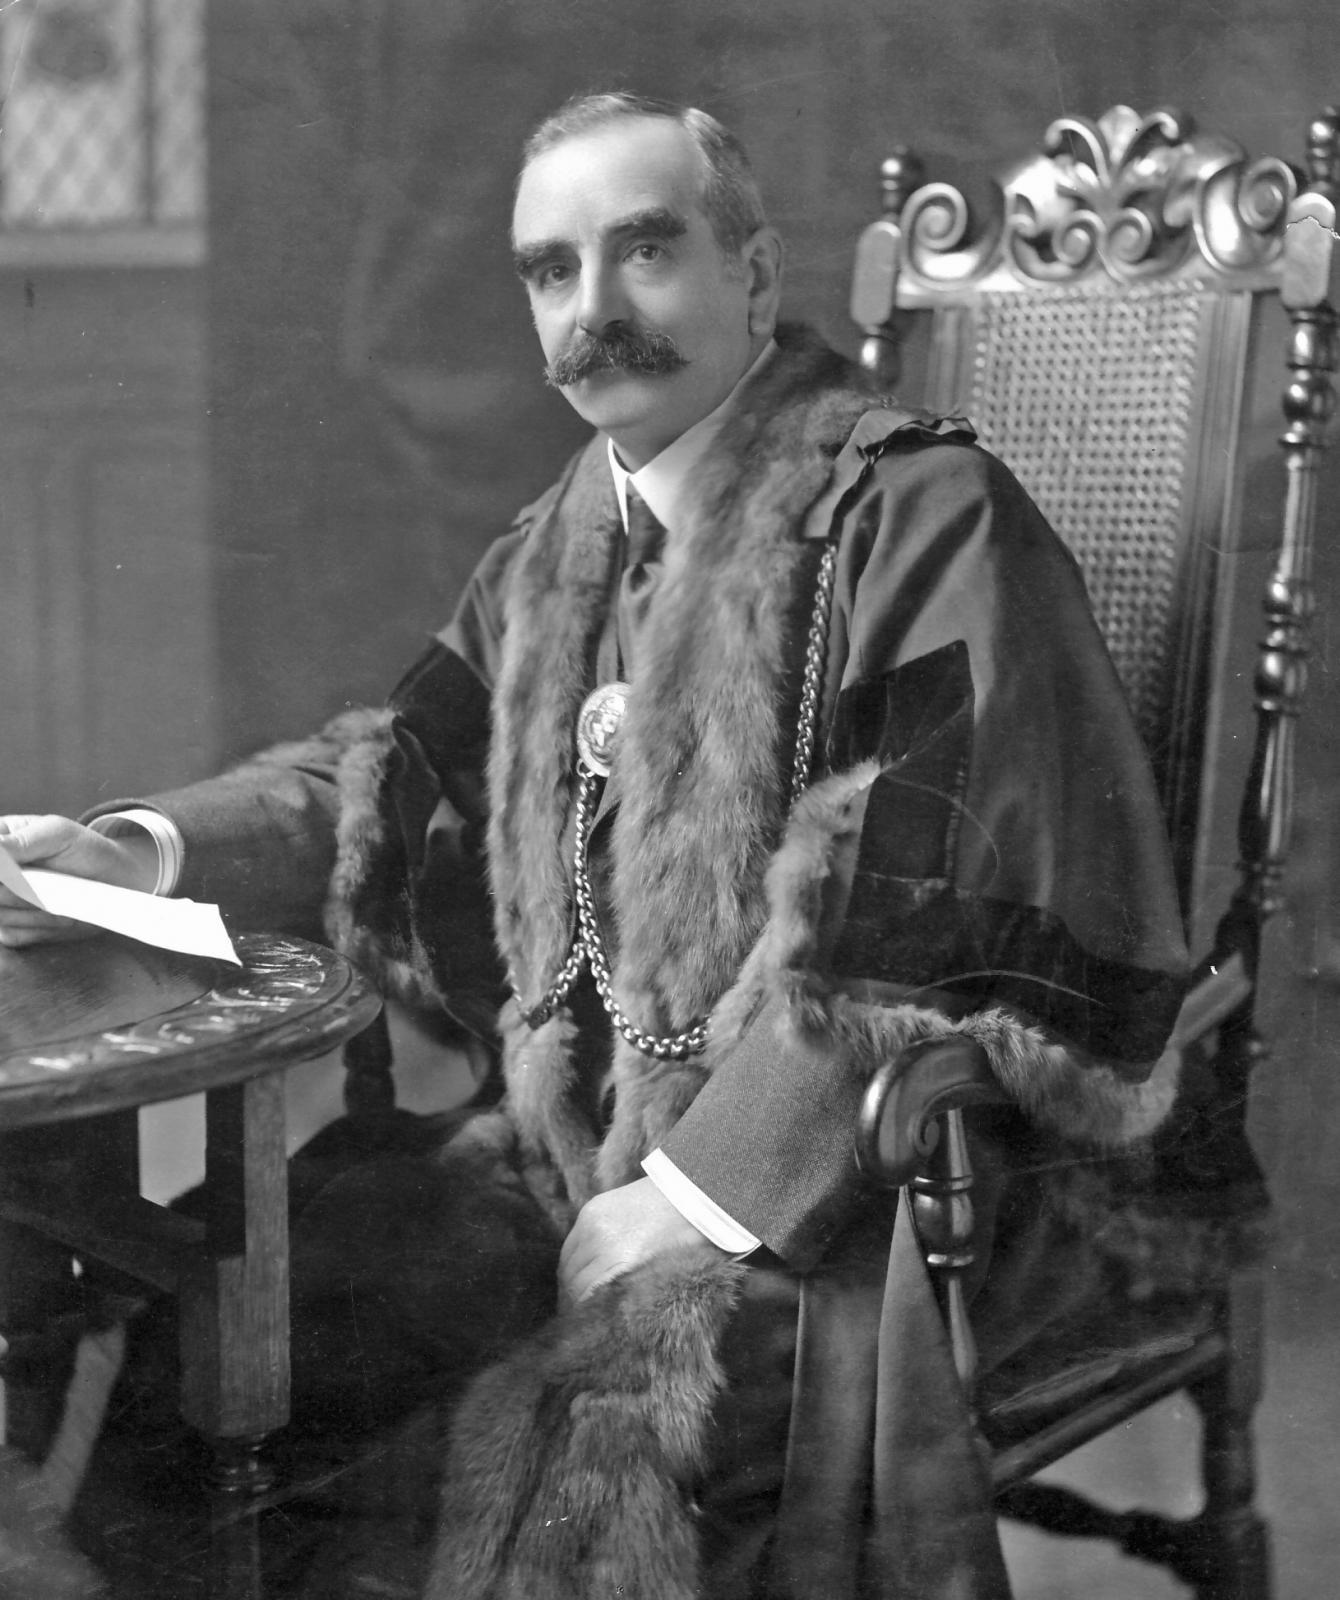 Mayor John Staddon 1915-1917